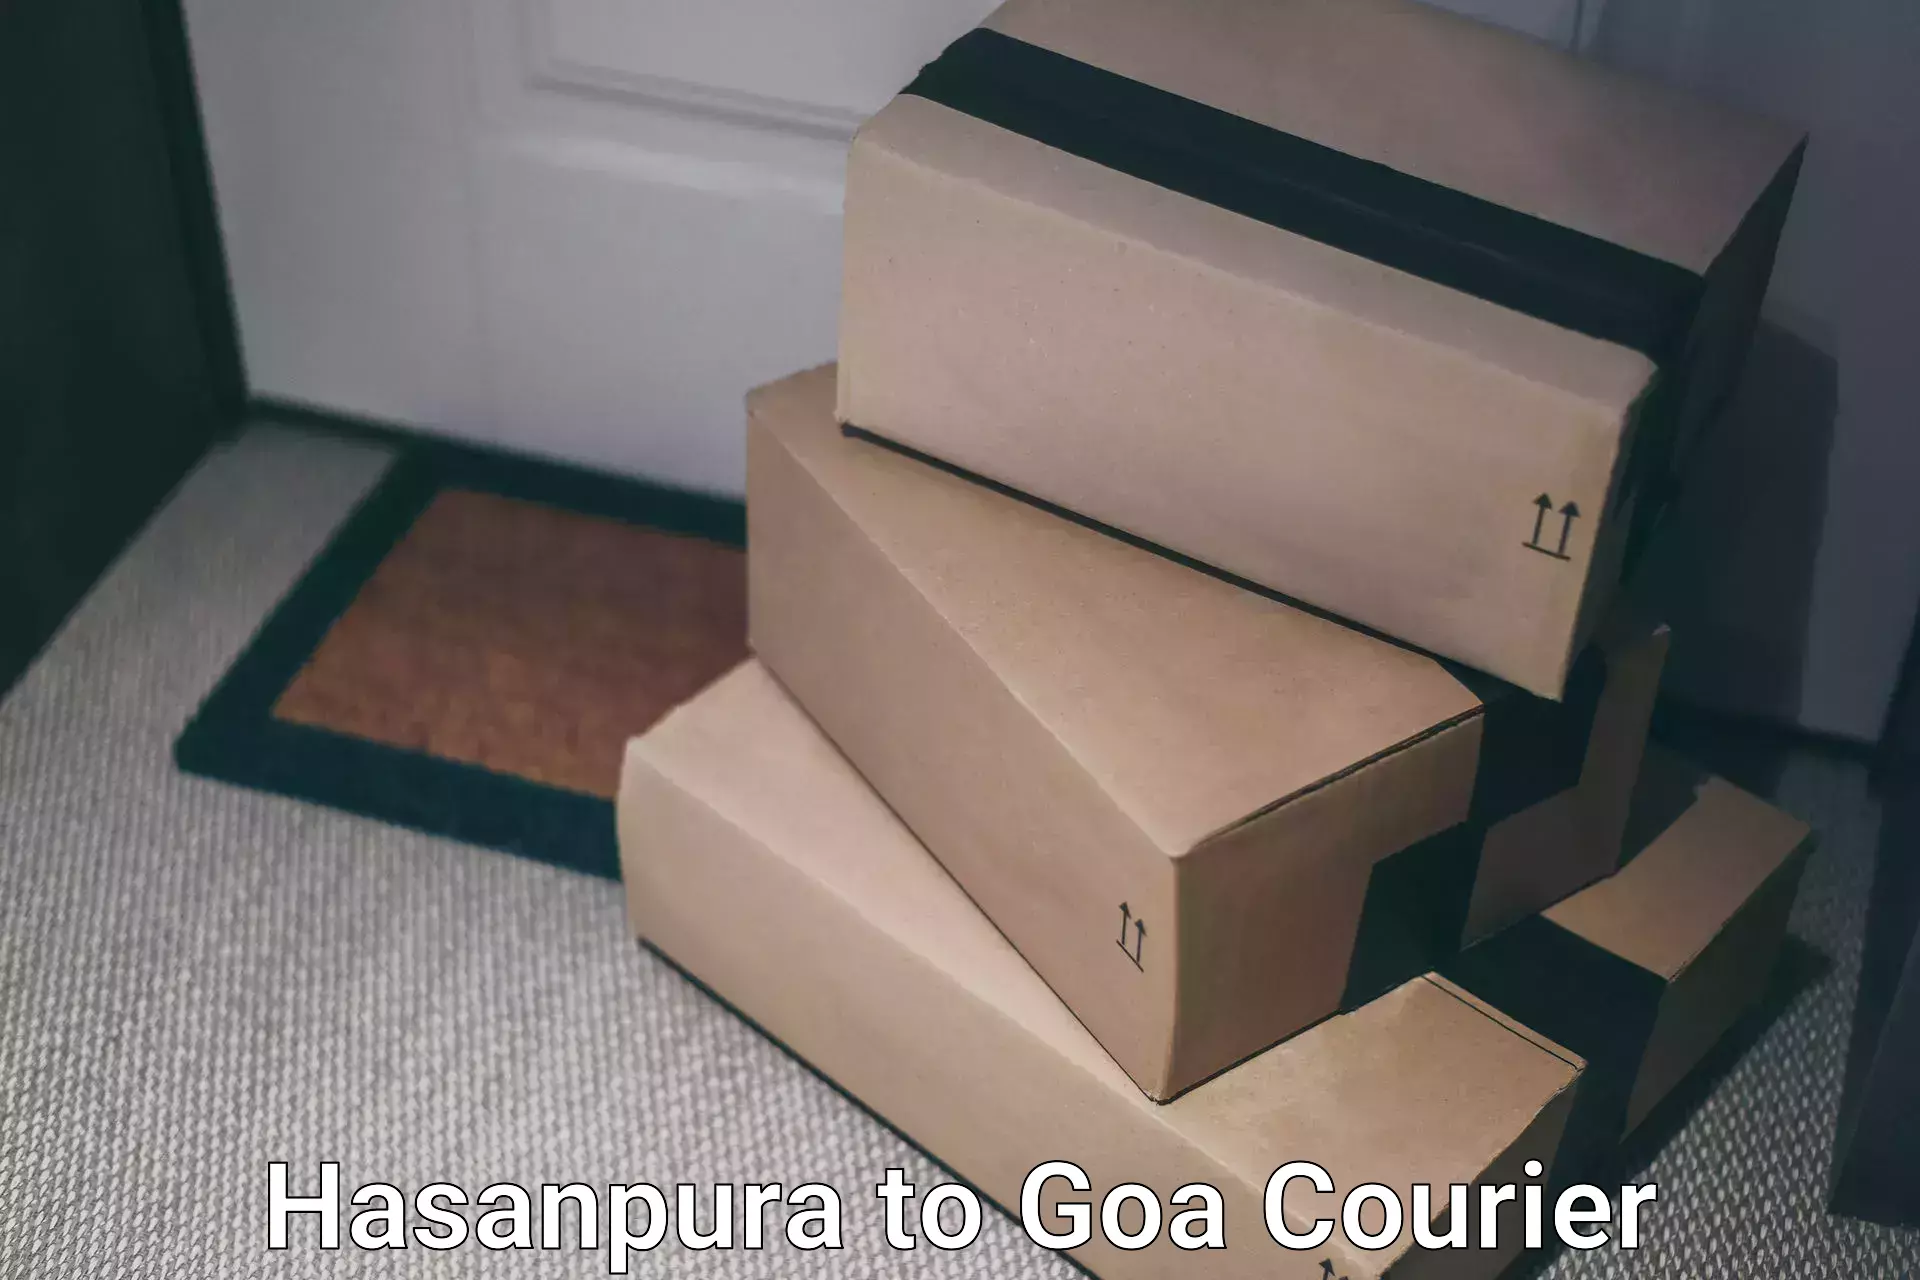 Fast delivery service Hasanpura to Ponda